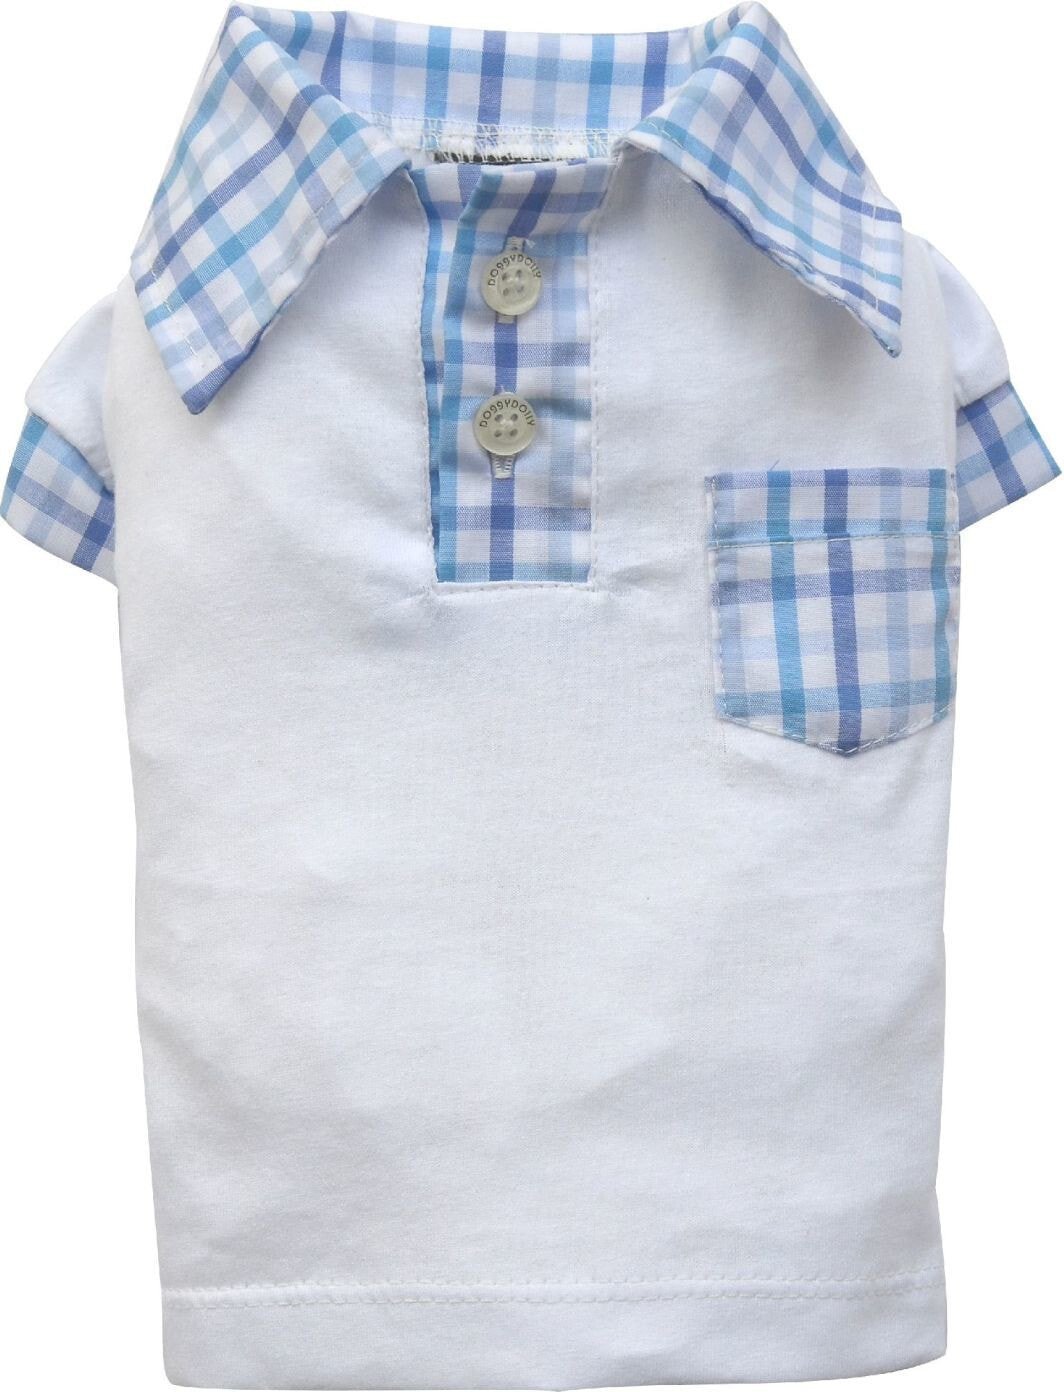 DoggyDolly Polo shirt, white, S 23-25cm / 36-38cm